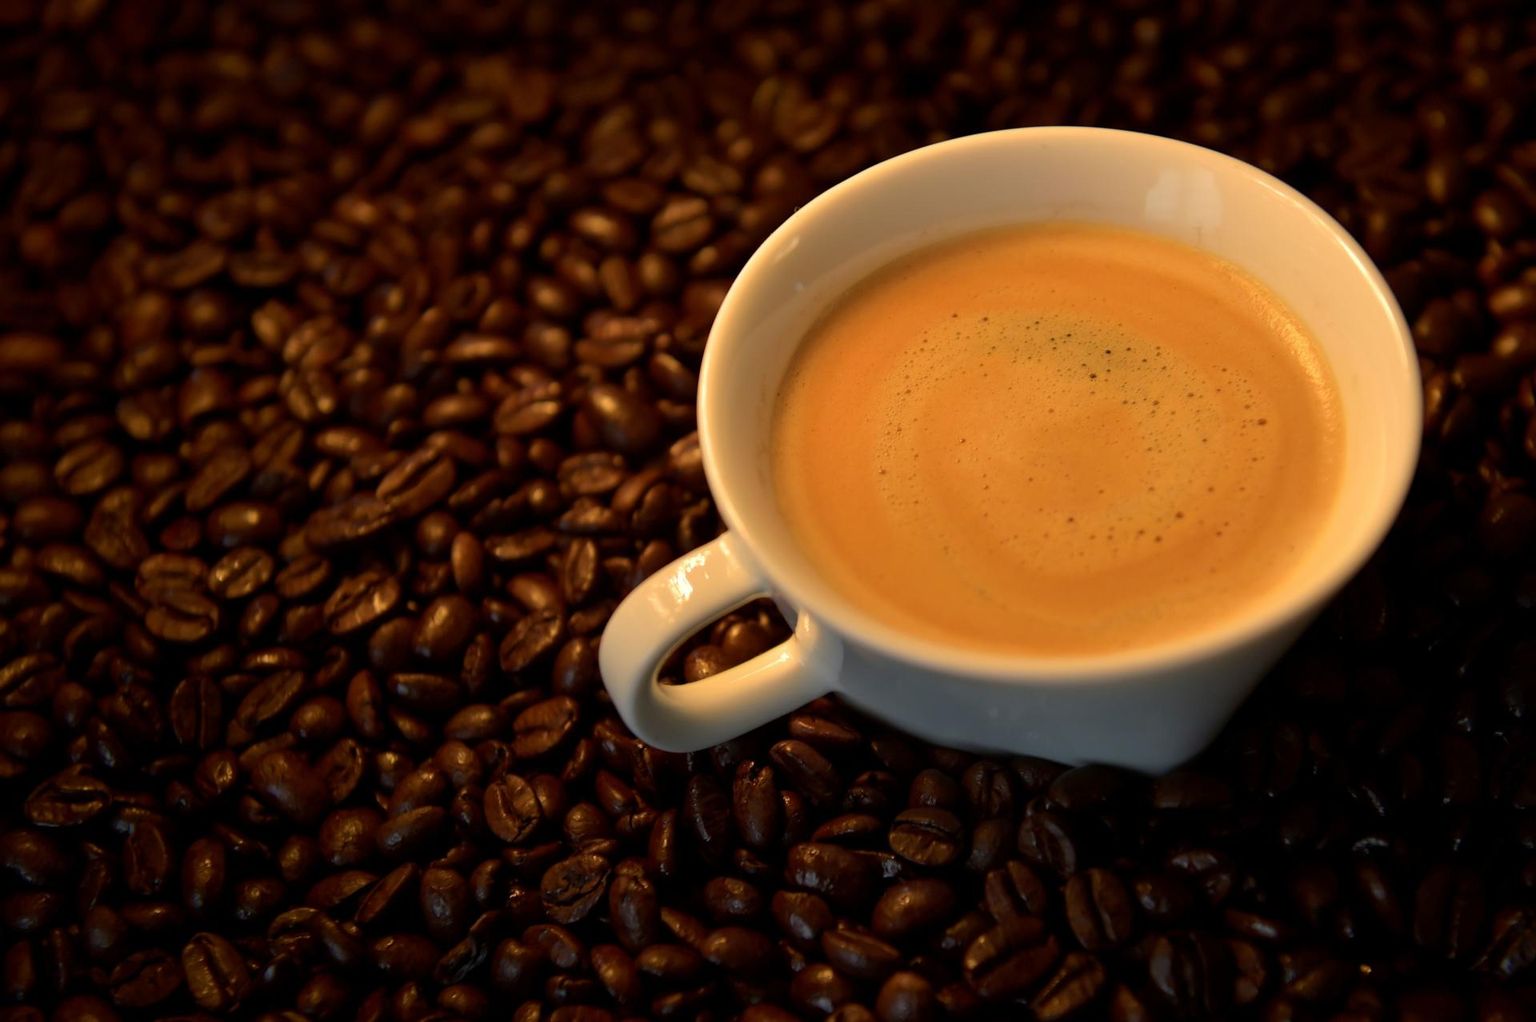 Kolme uuringu analüüsil ilmnes, et kahe-kolme tassi kohvi joomine päevas vähendas südamepuudulikkuse kujunemise riski 10–30 protsendi võrra.